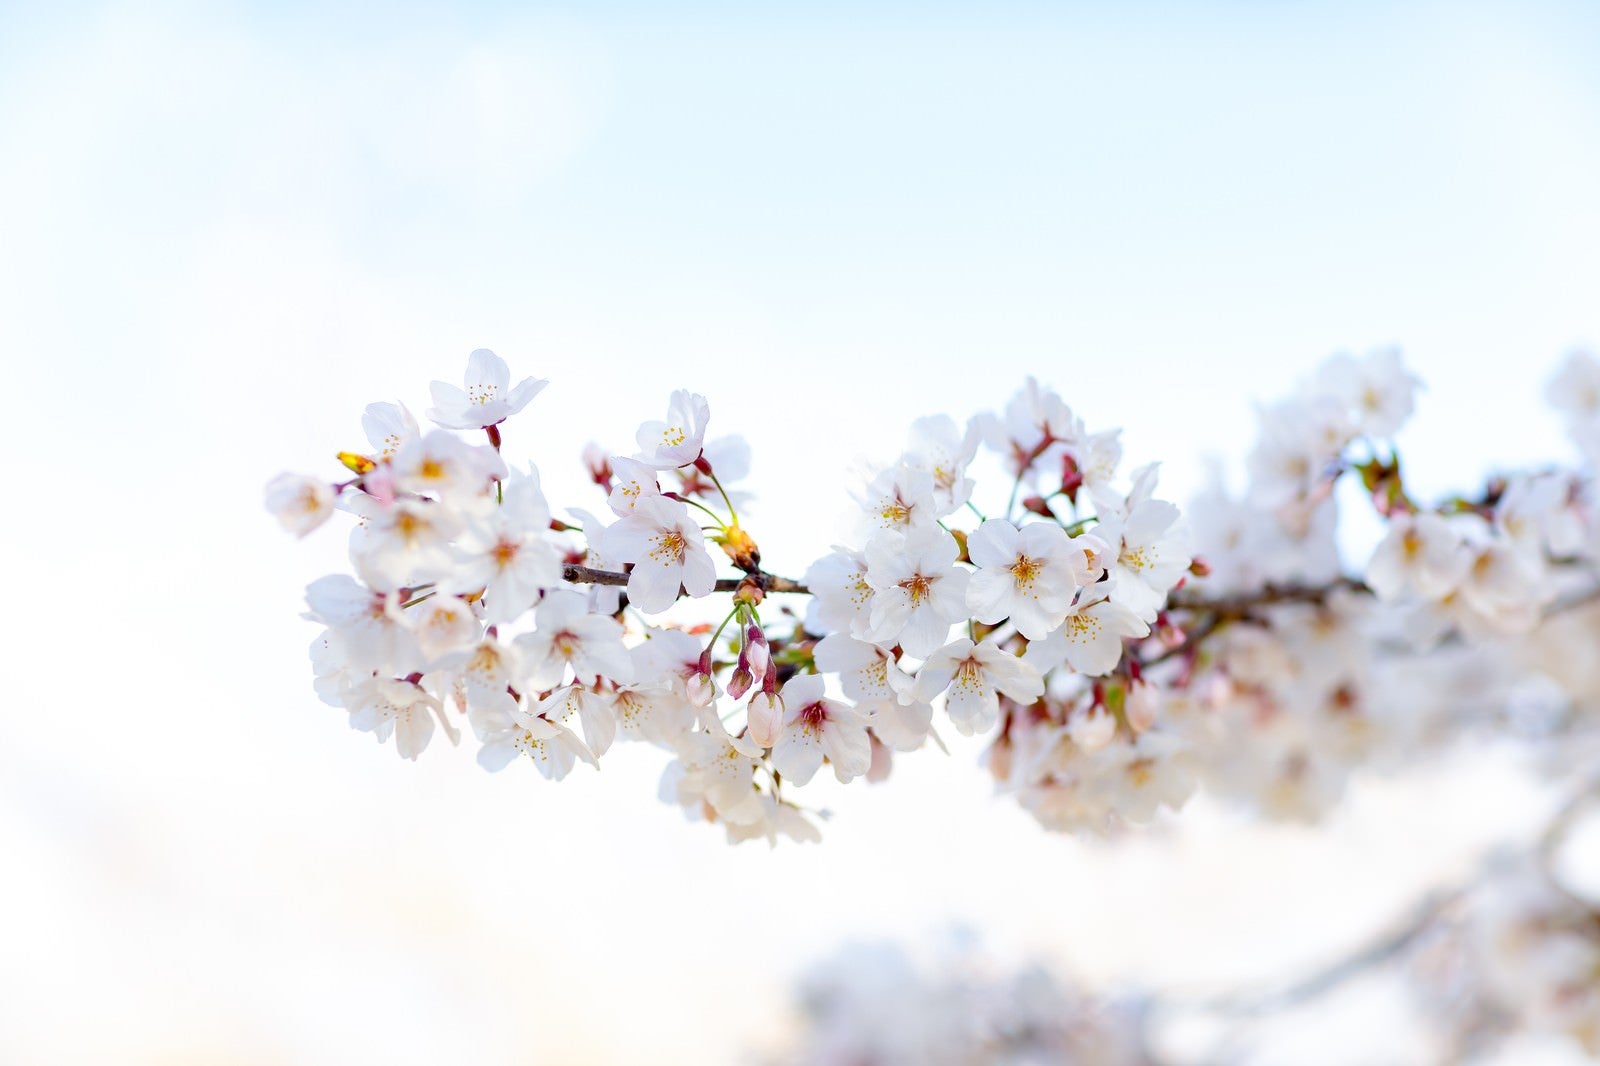 「霞む空に訪れる満開の桜」の写真